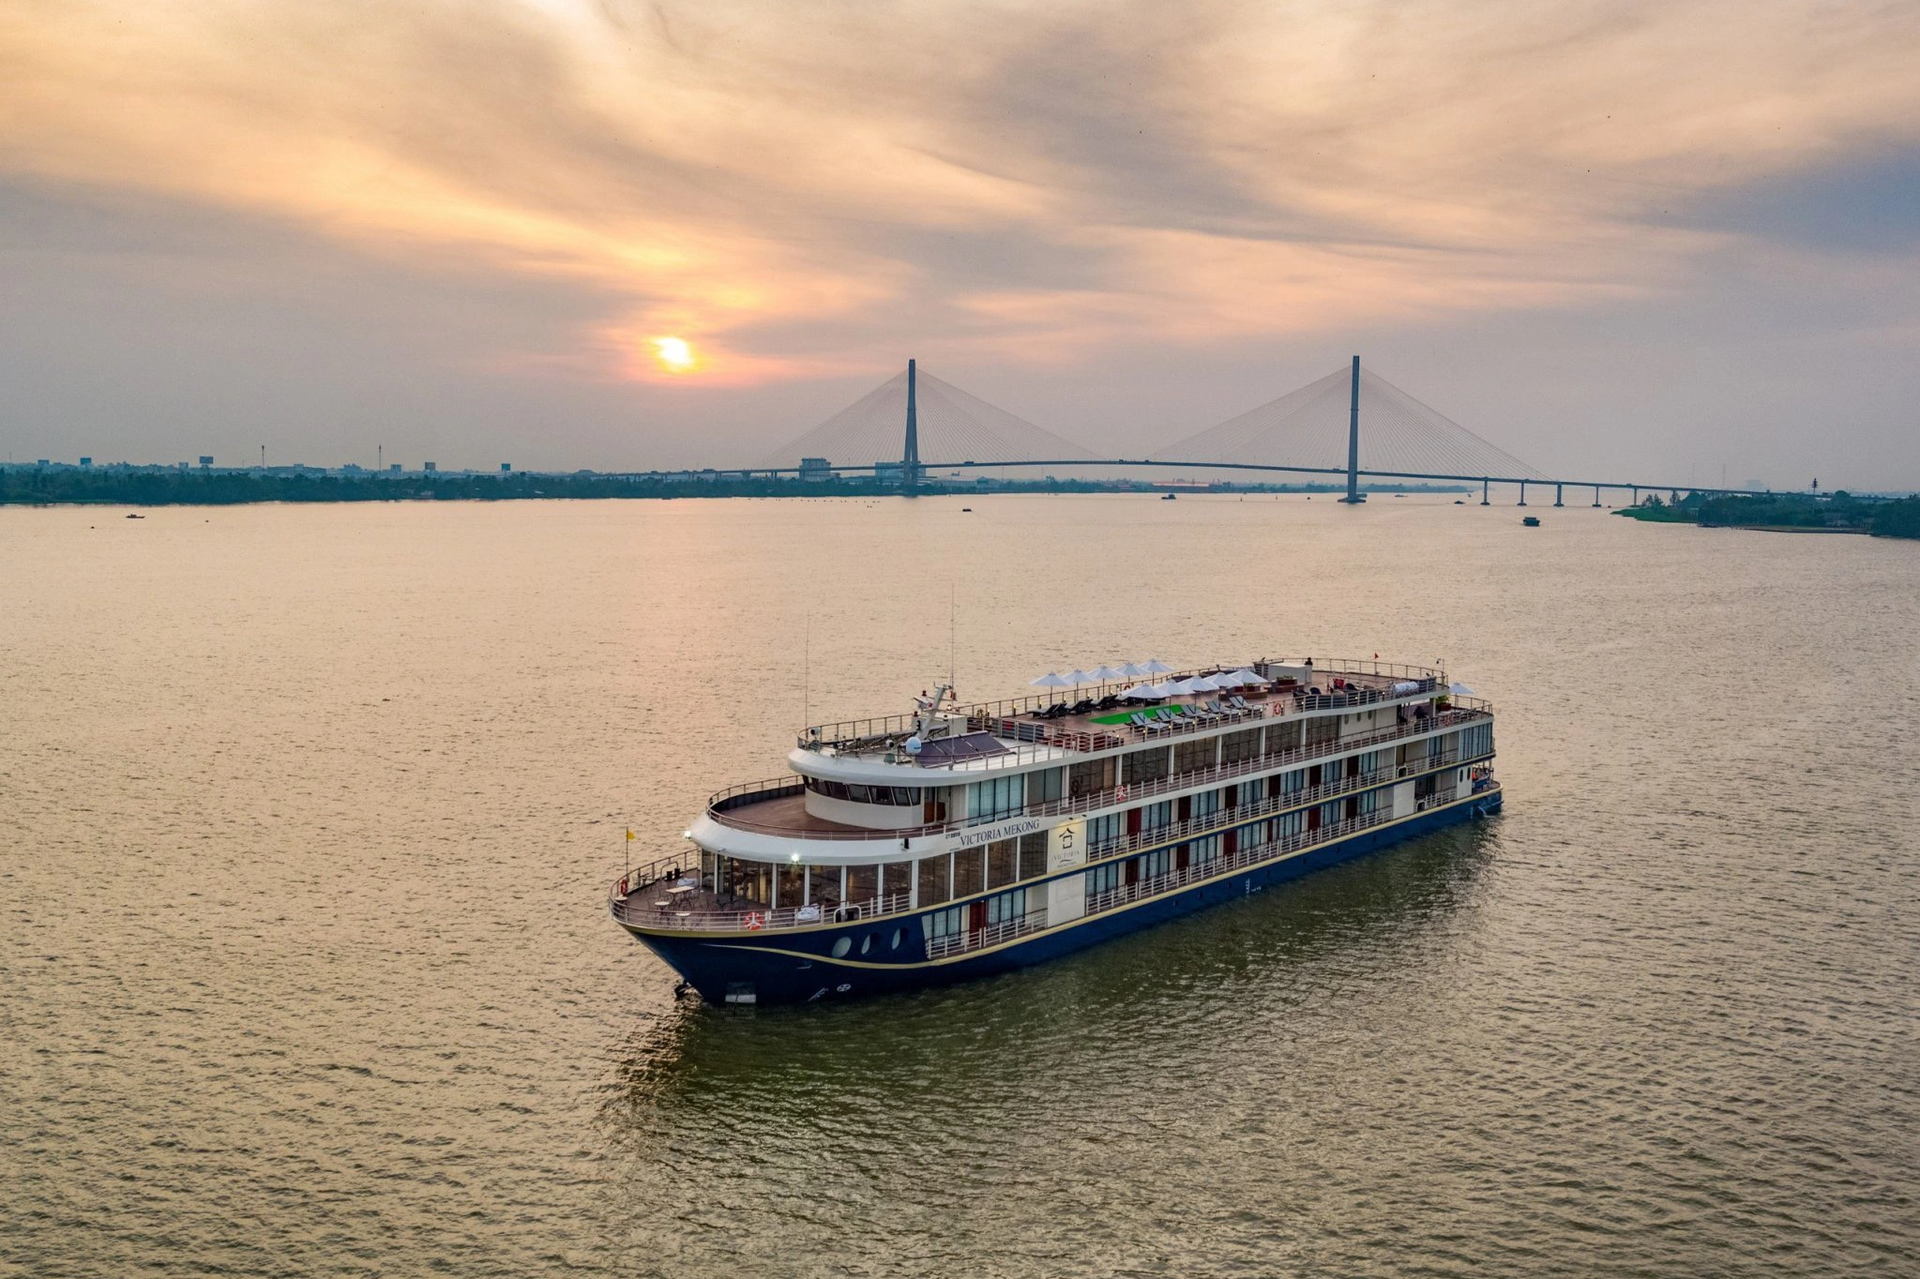 Cận cảnh du thuyền triệu đô trên sông Mekong: Có sân golf, rạp phim - 1